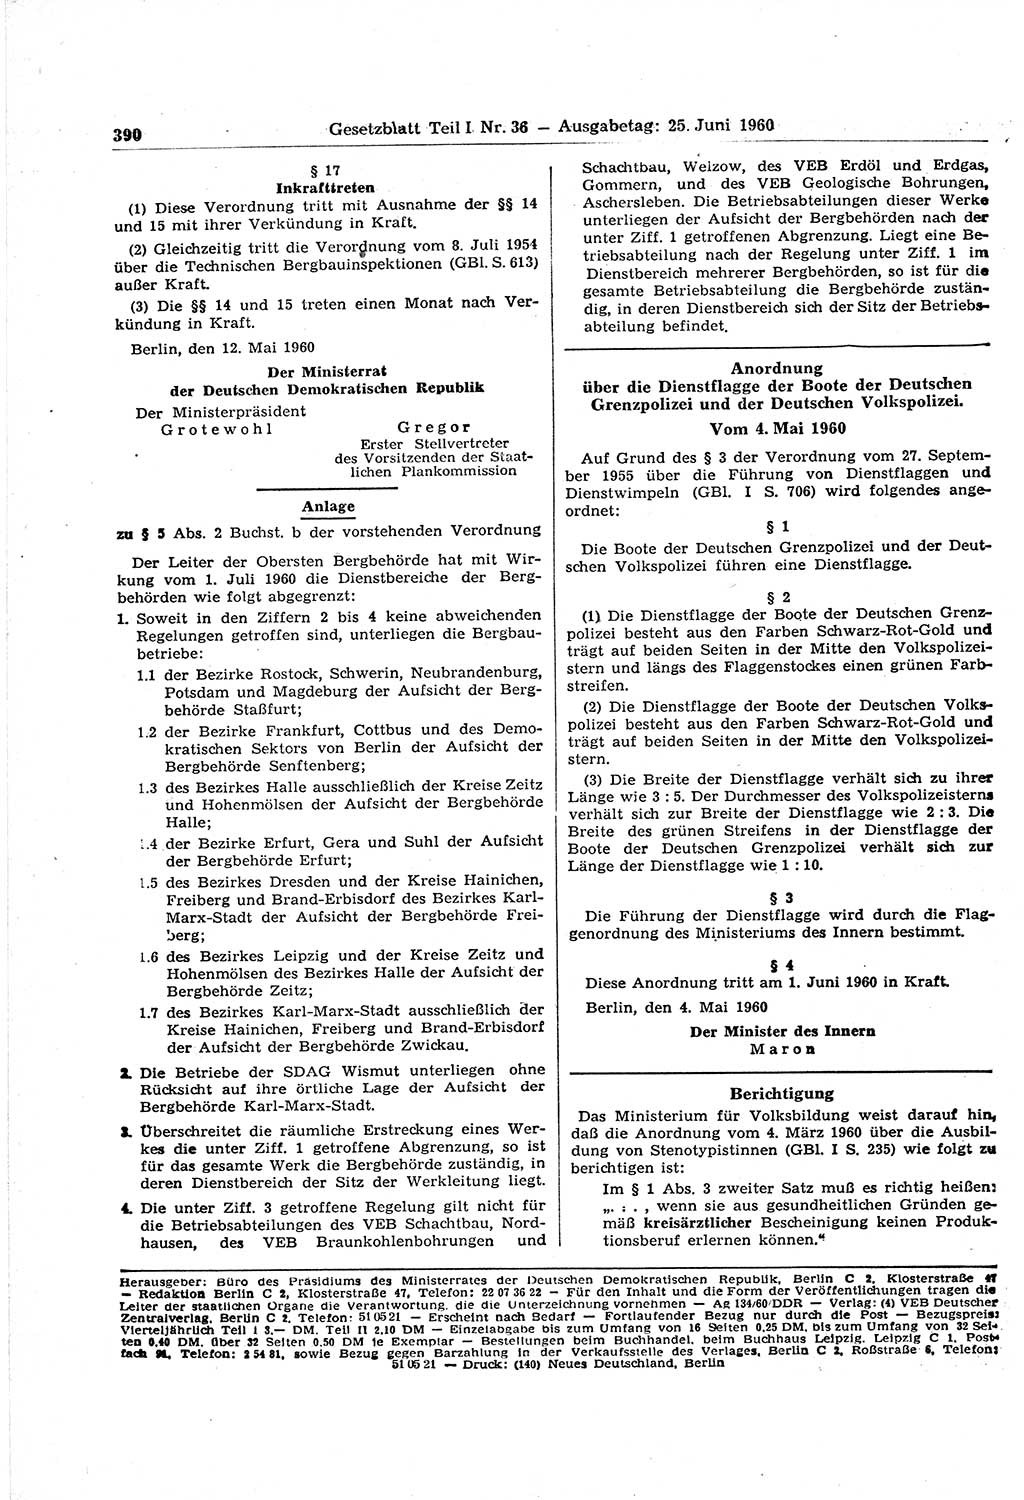 Gesetzblatt (GBl.) der Deutschen Demokratischen Republik (DDR) Teil Ⅰ 1960, Seite 390 (GBl. DDR Ⅰ 1960, S. 390)